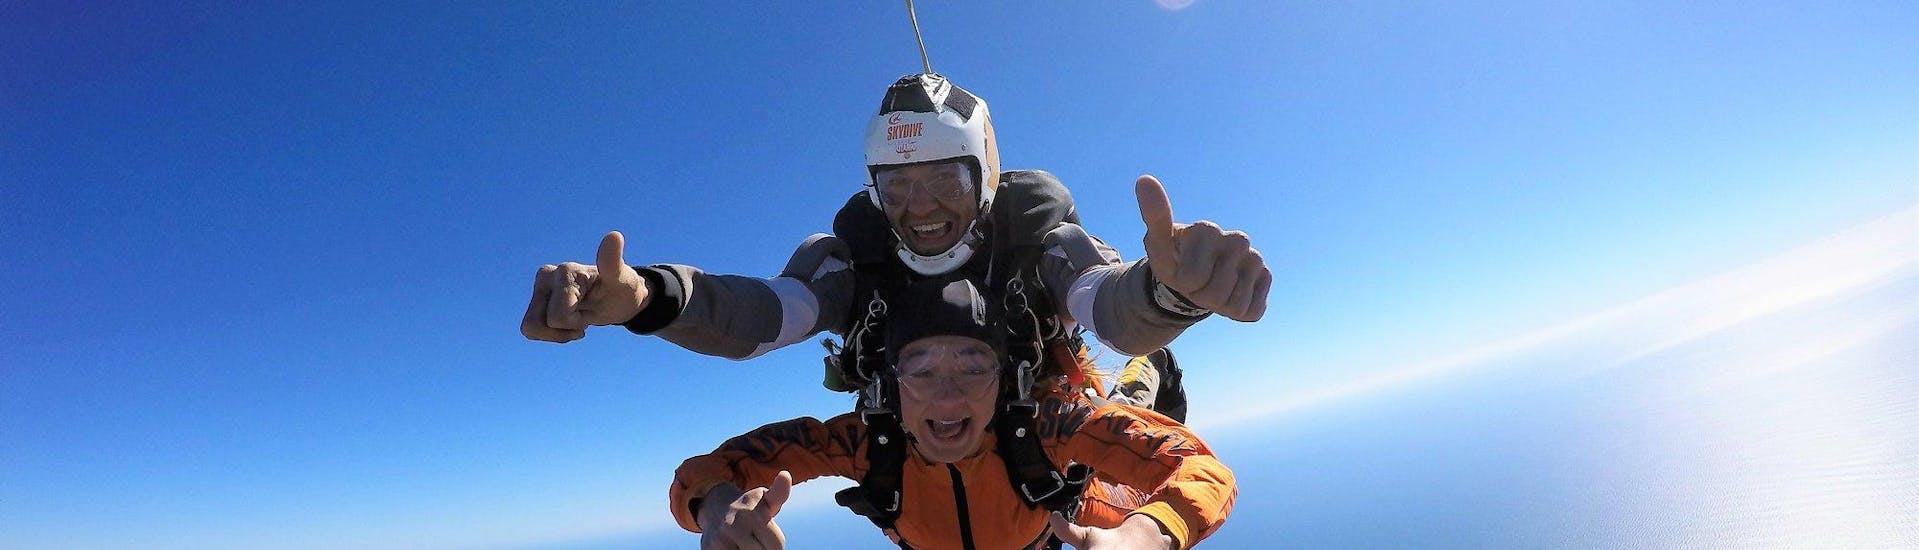 Una joven está cayendo del cielo con su instructor durante el salto en tándem desde 15.000 pies - Algarve con Skydive Algarve.